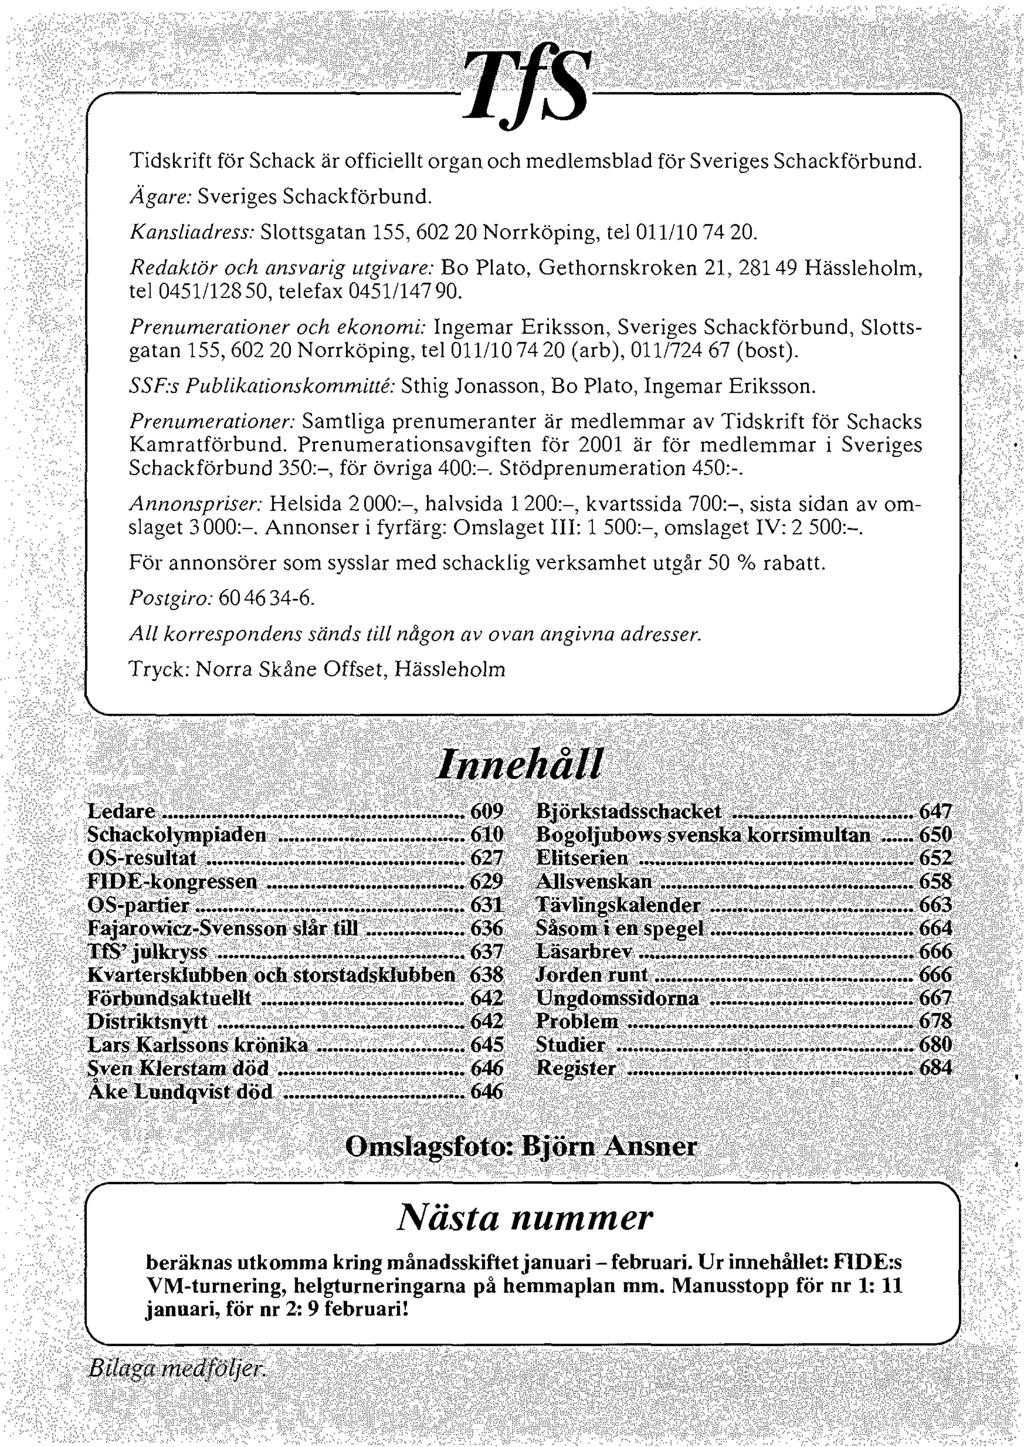 Tidskrift för Schack är officiellt organ och medlemsblad för Sveriges Schackförbund. bild